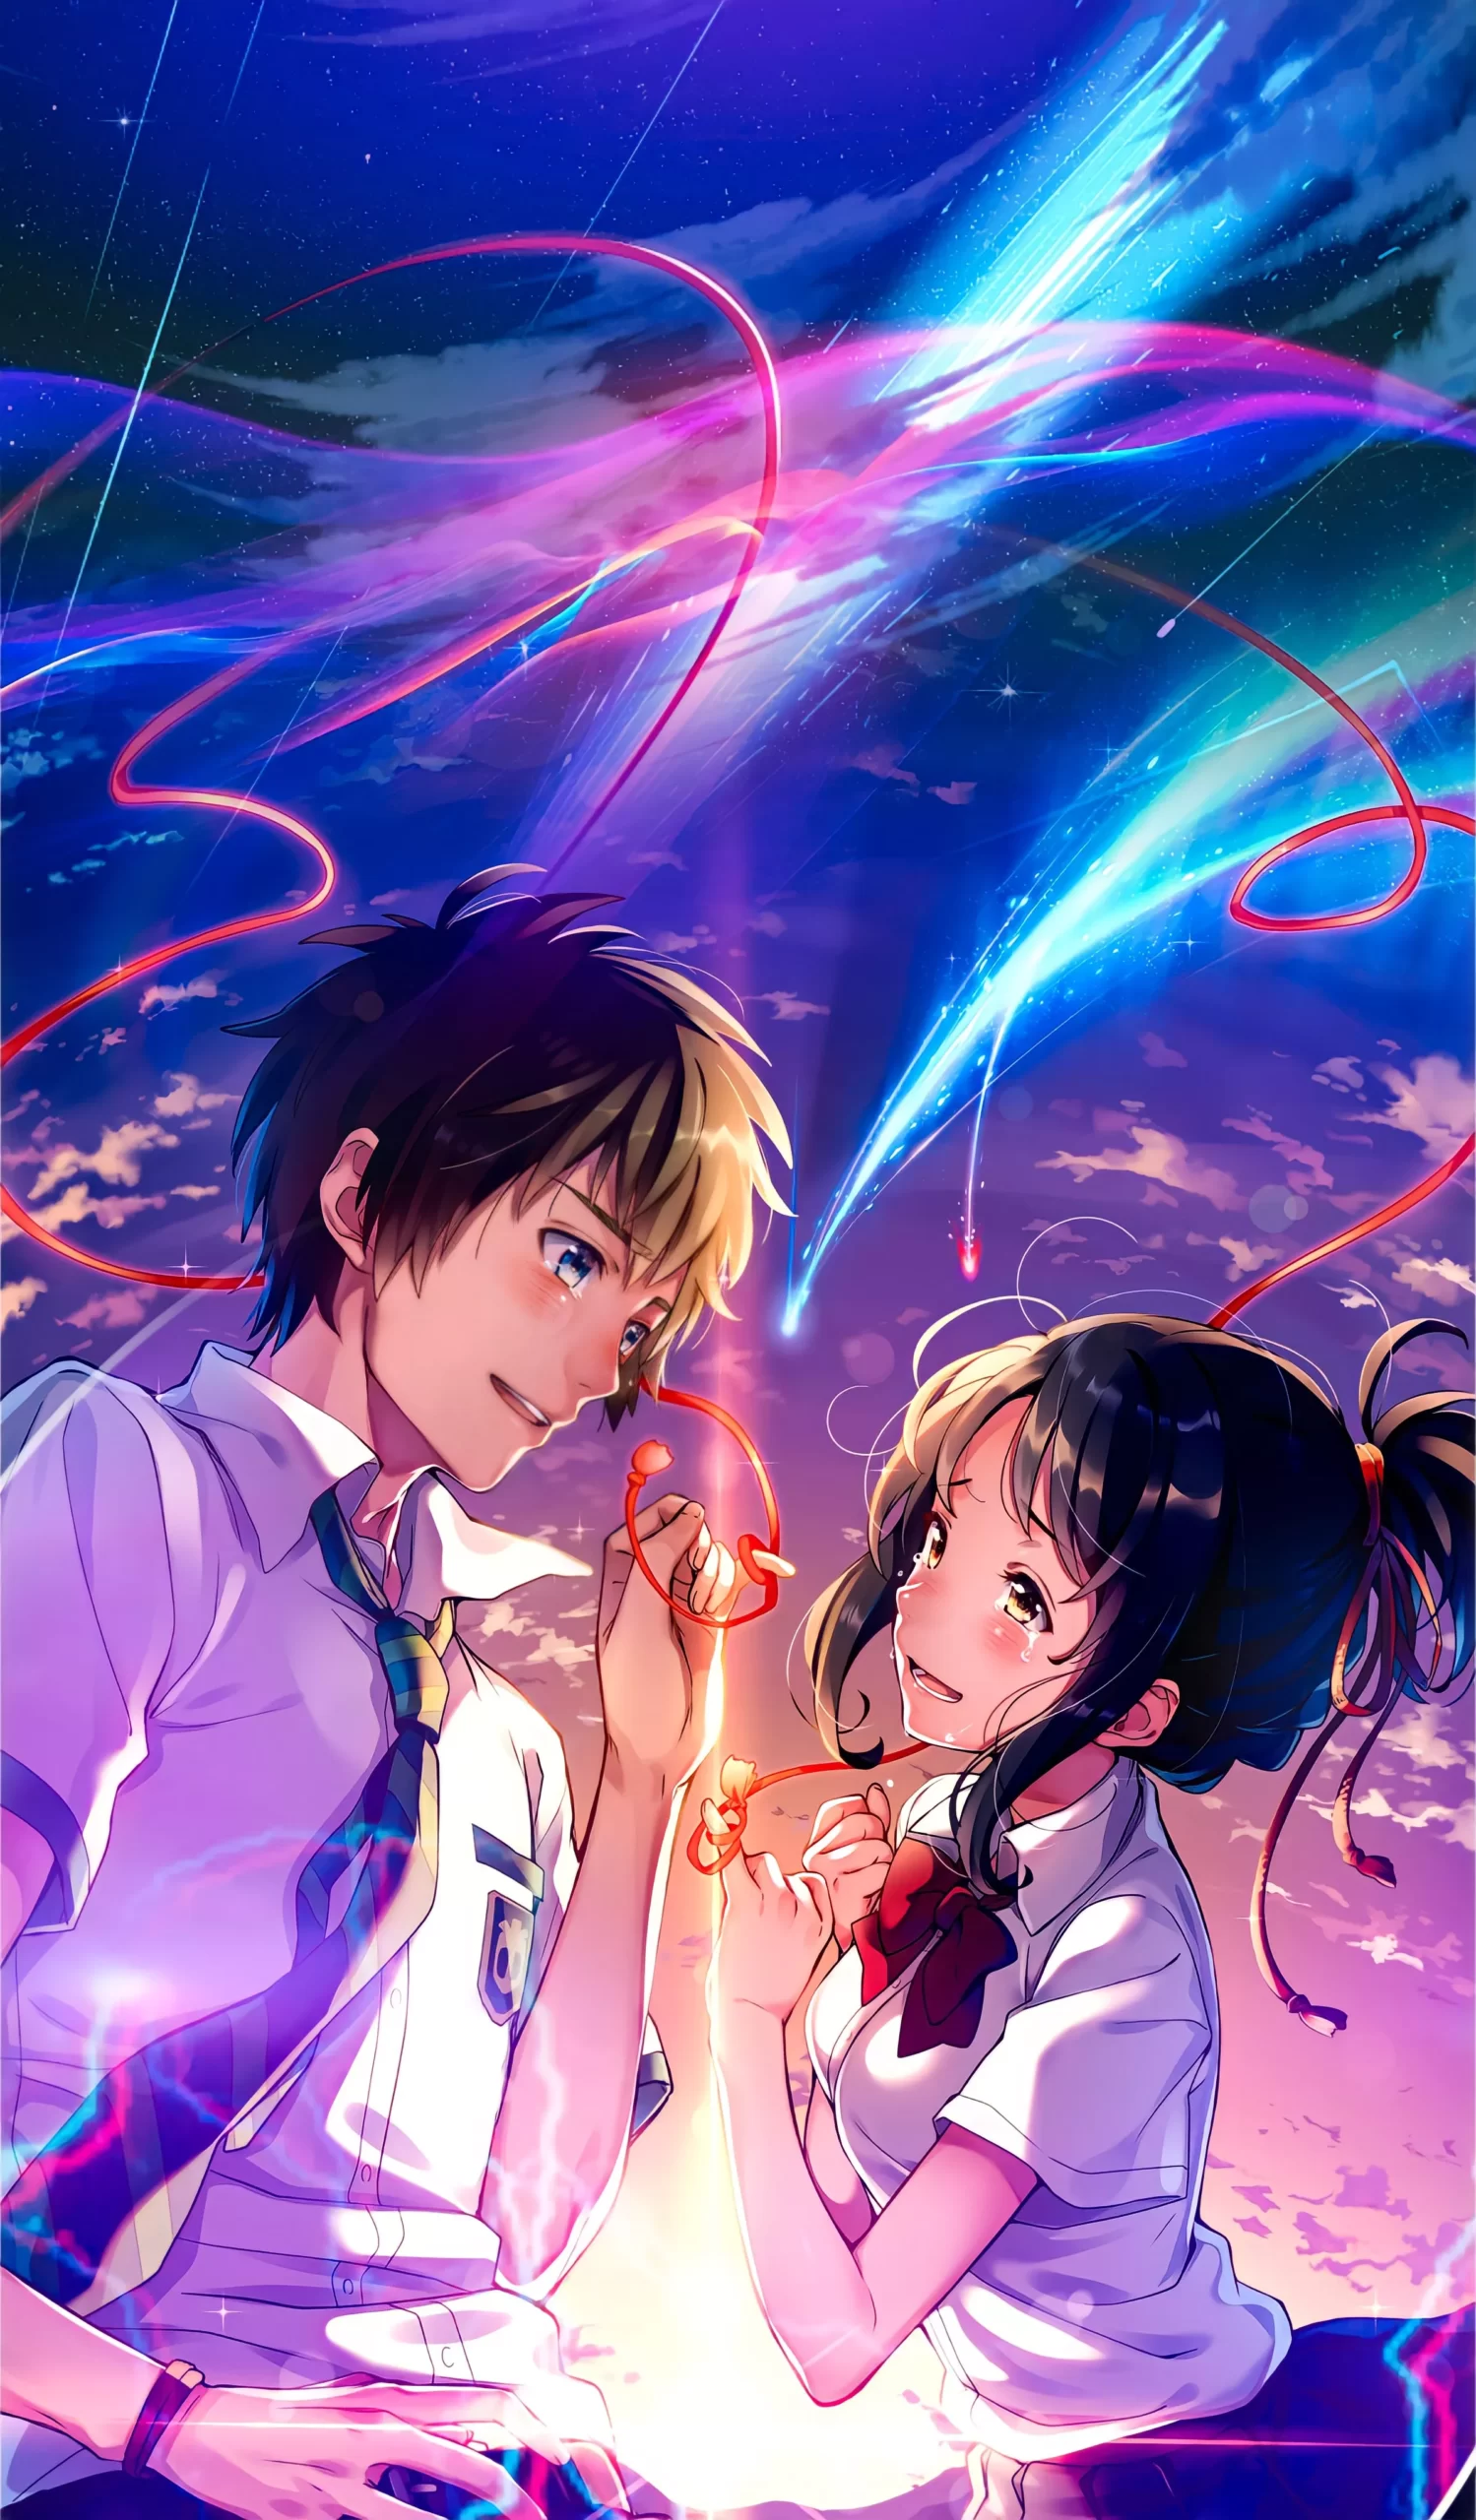 Kawaii Anime Kiss Couple GIF | GIFDB.com